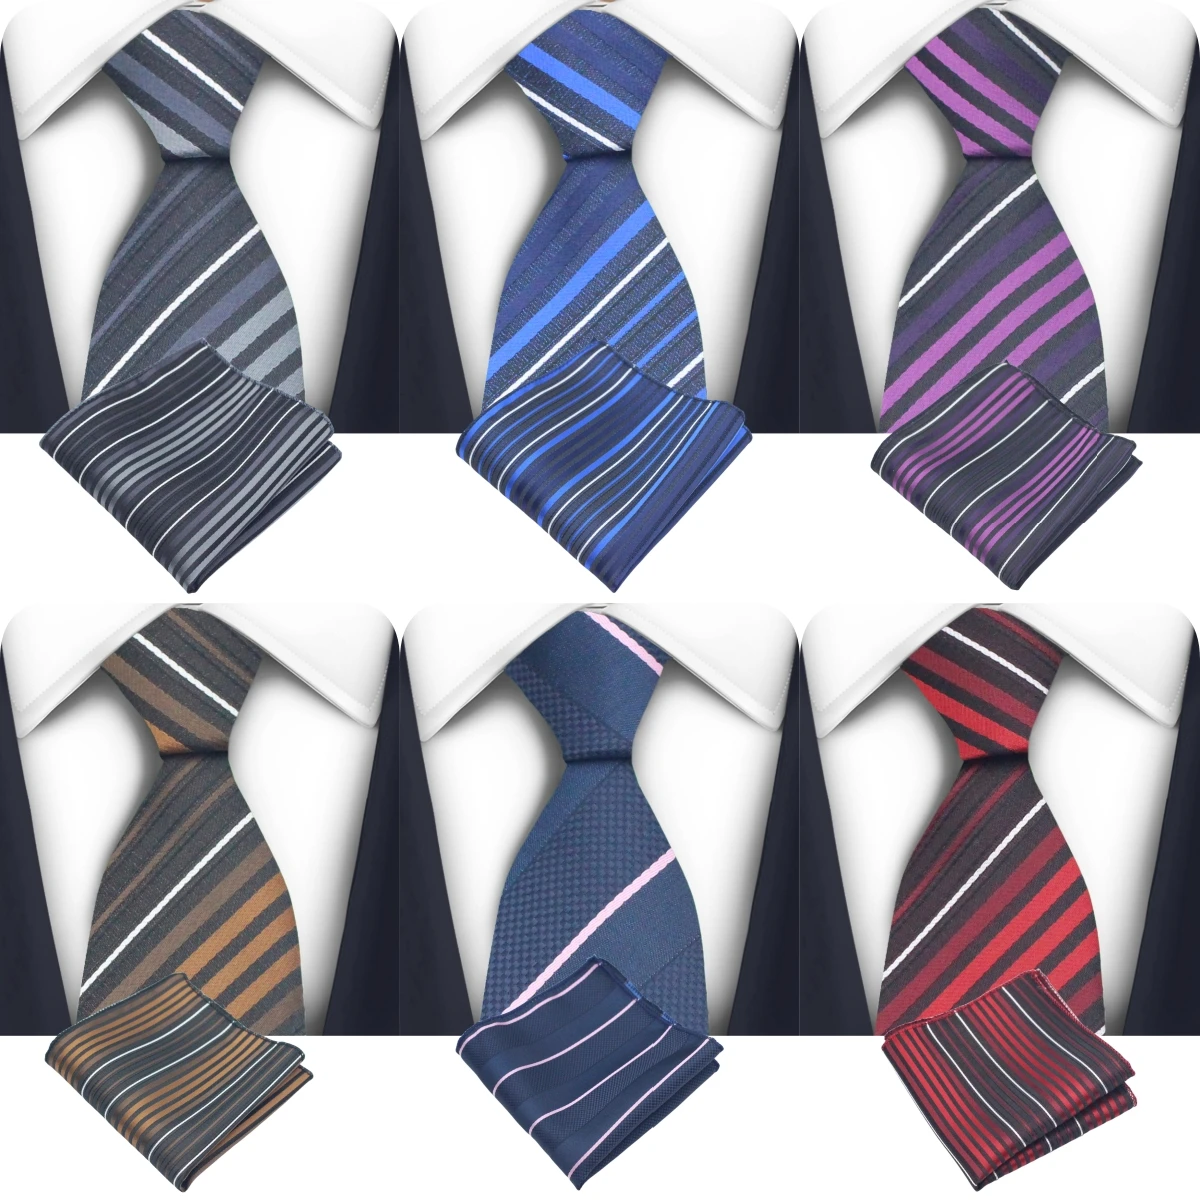 

Новинка мужские повседневные тонкие галстуки 5 см классические тканые галстуки из полиэстера модные галстуки в клетку в полоску мужской галстук для свадьбы деловой ГАЛСТУК